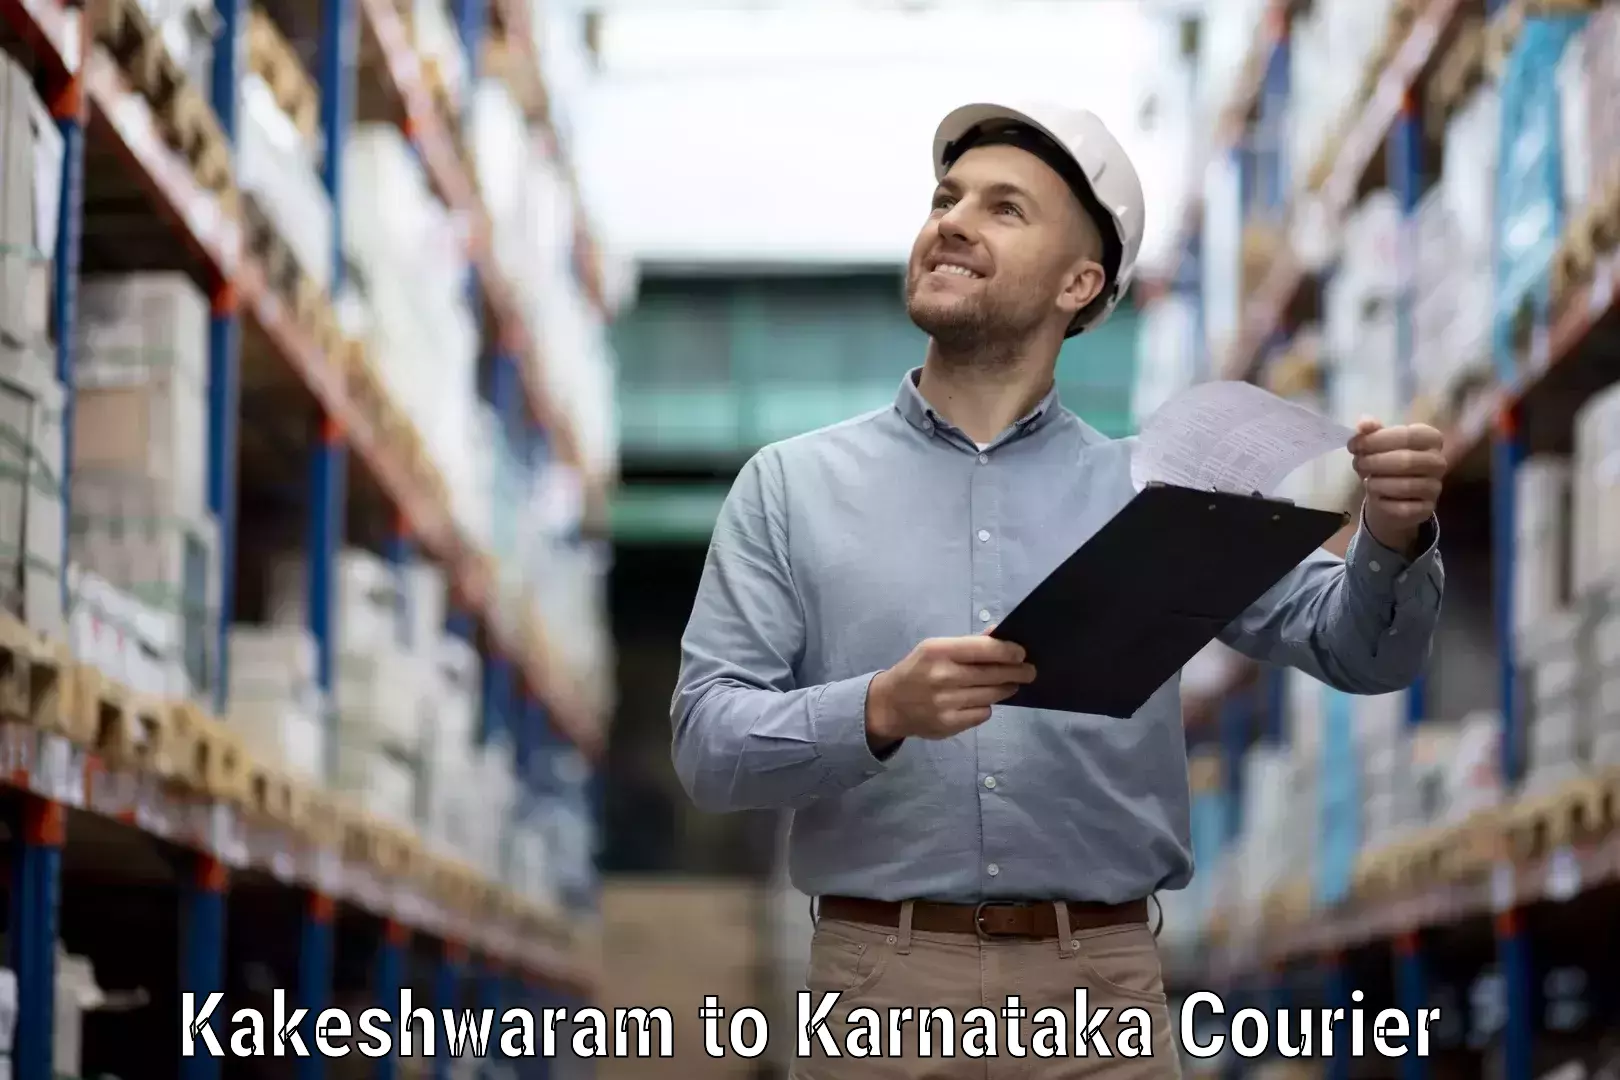 Efficient freight service Kakeshwaram to Kanjarakatte